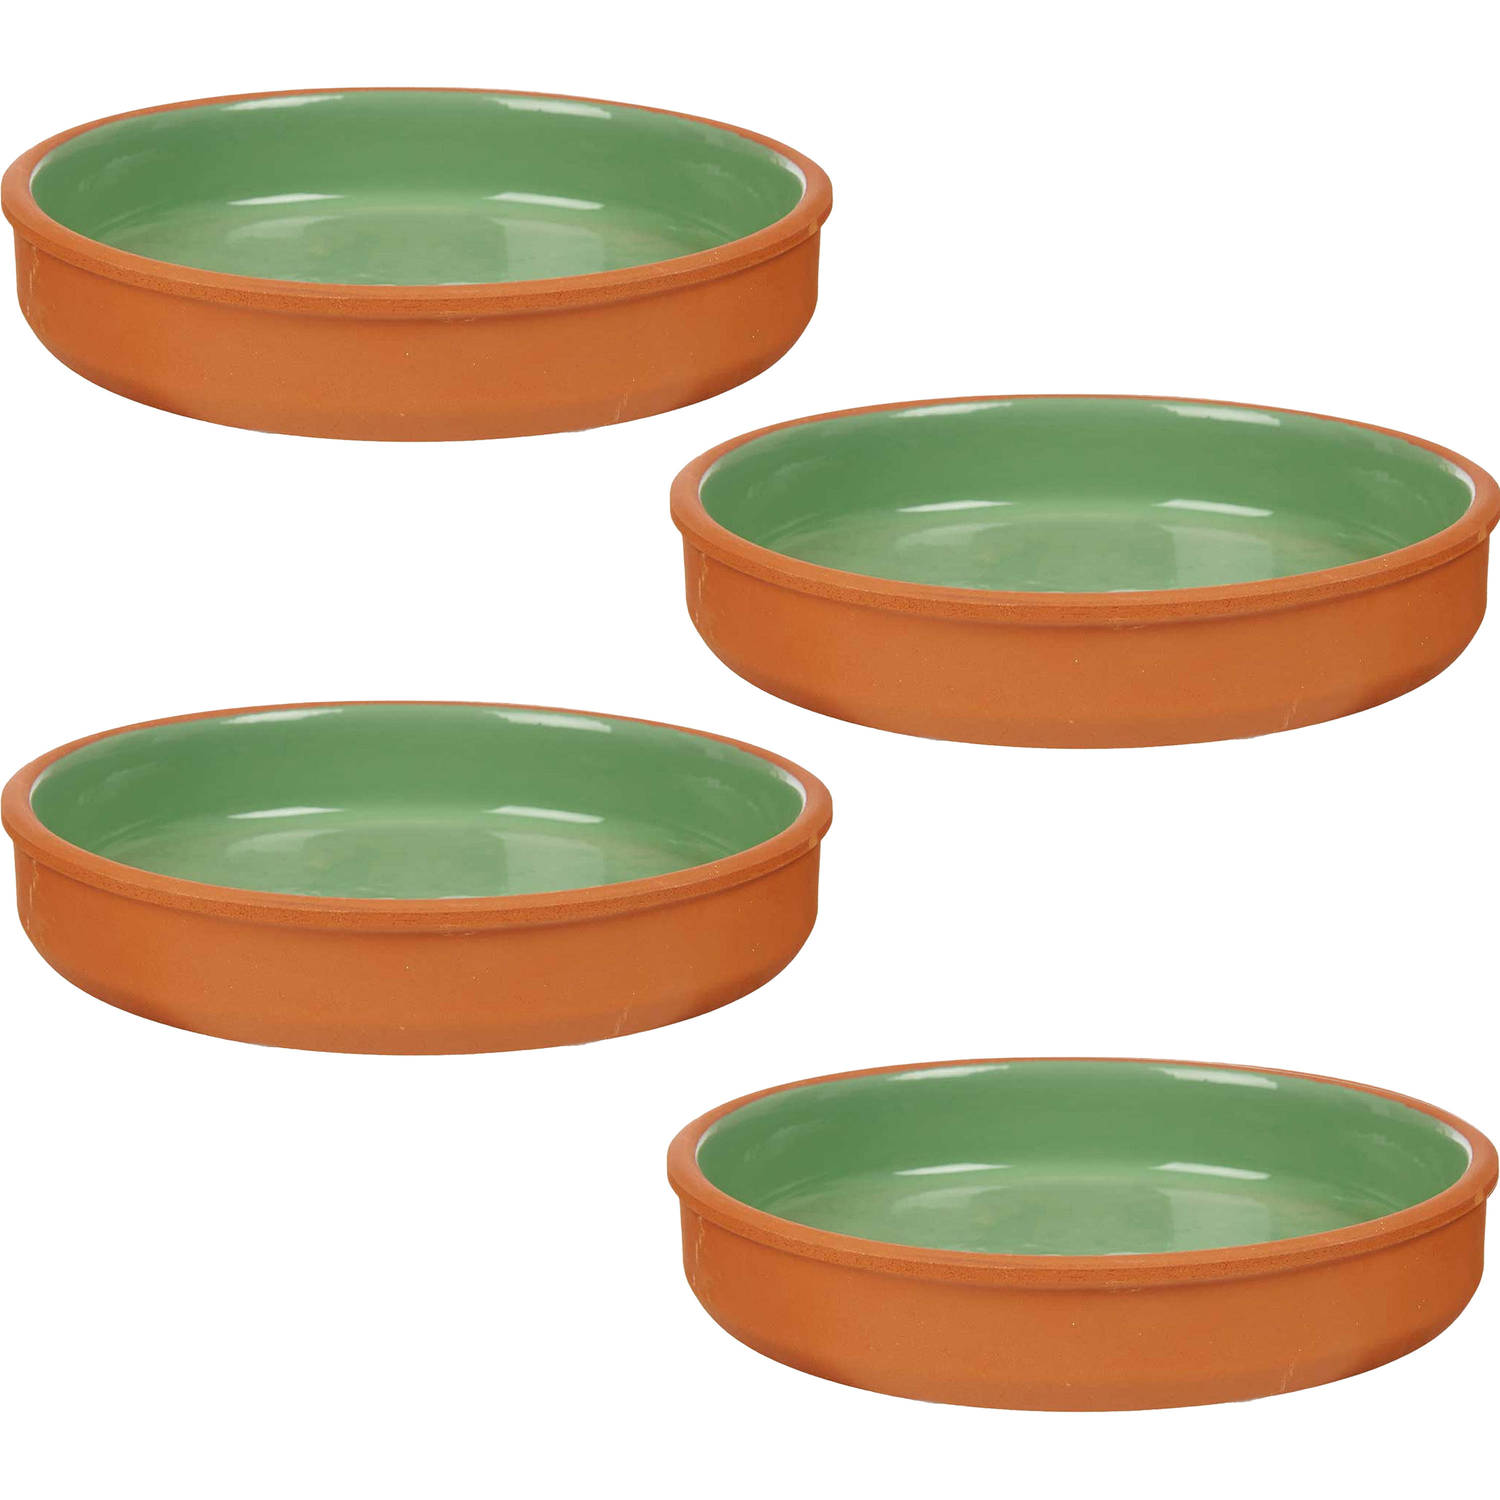 4x stuks tapas-hapjes serveren-oven schaal terracotta-groen 23 x 4 cm Snack en tapasschalen